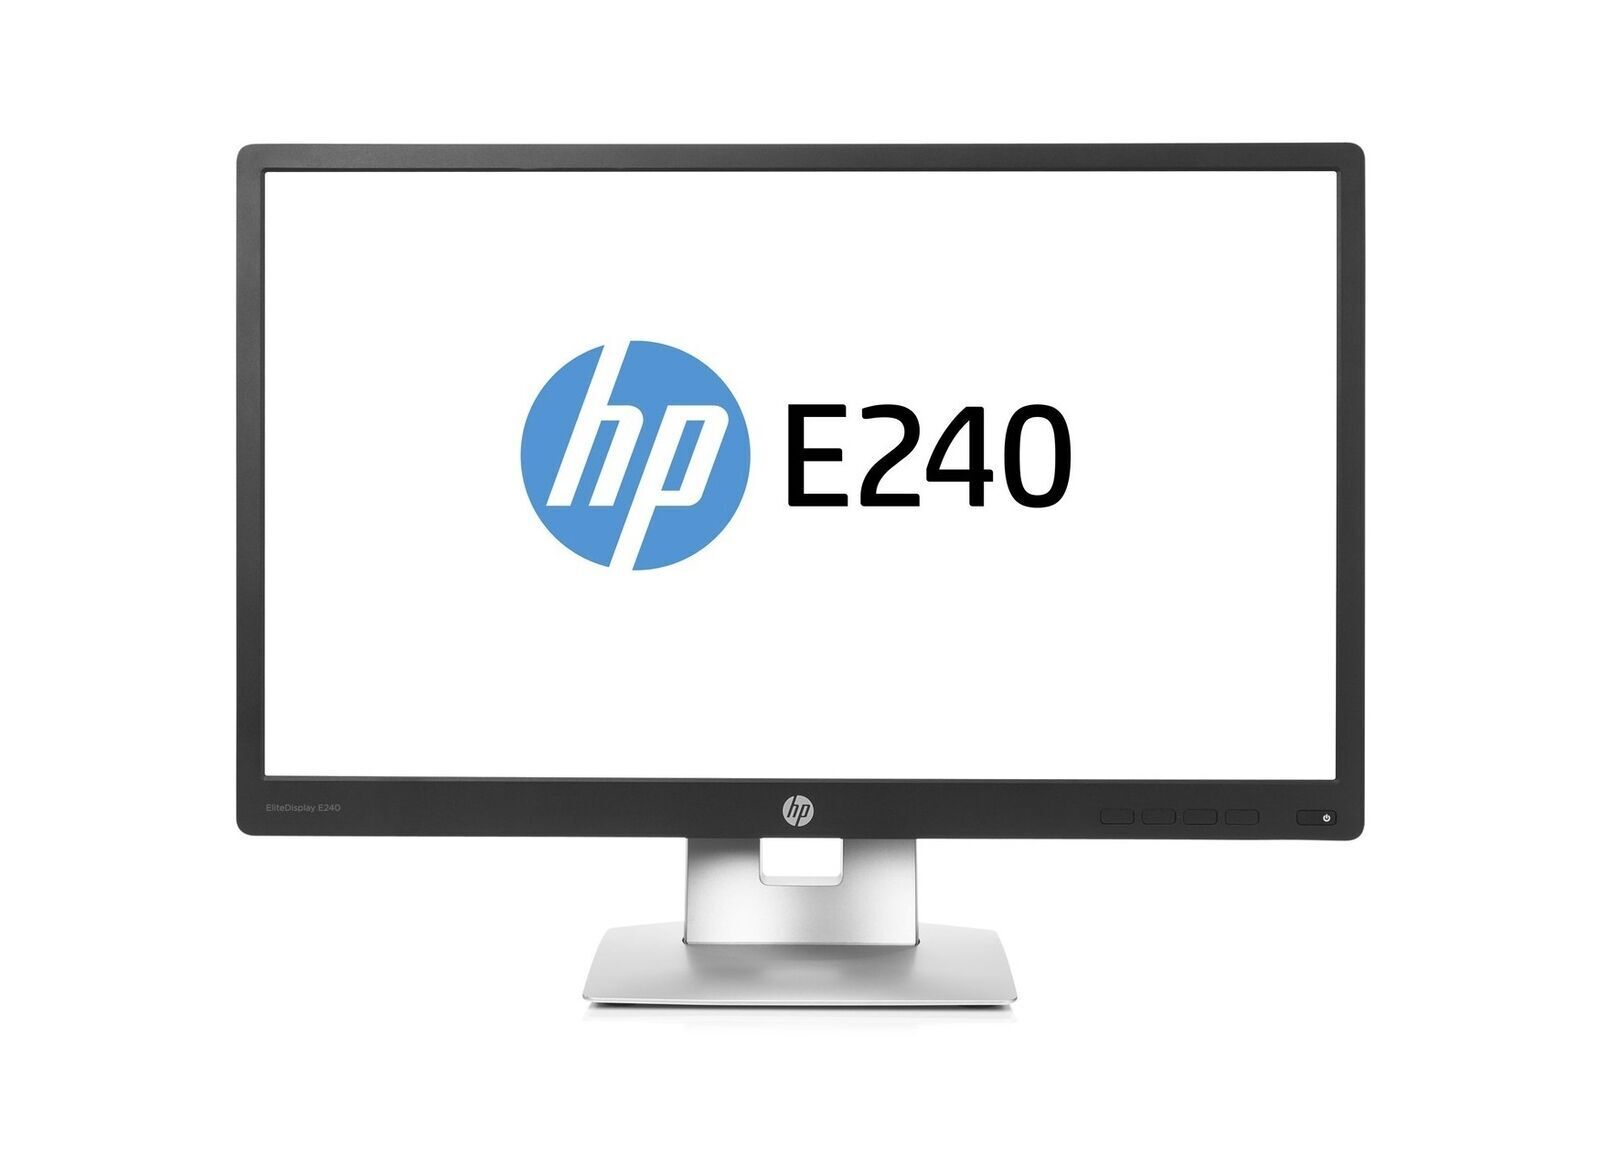 HP ELITE DISPLAY E240 24 Inch Wide screen 1920x1080 Full HD Anti Glare- Refurbished Monitor